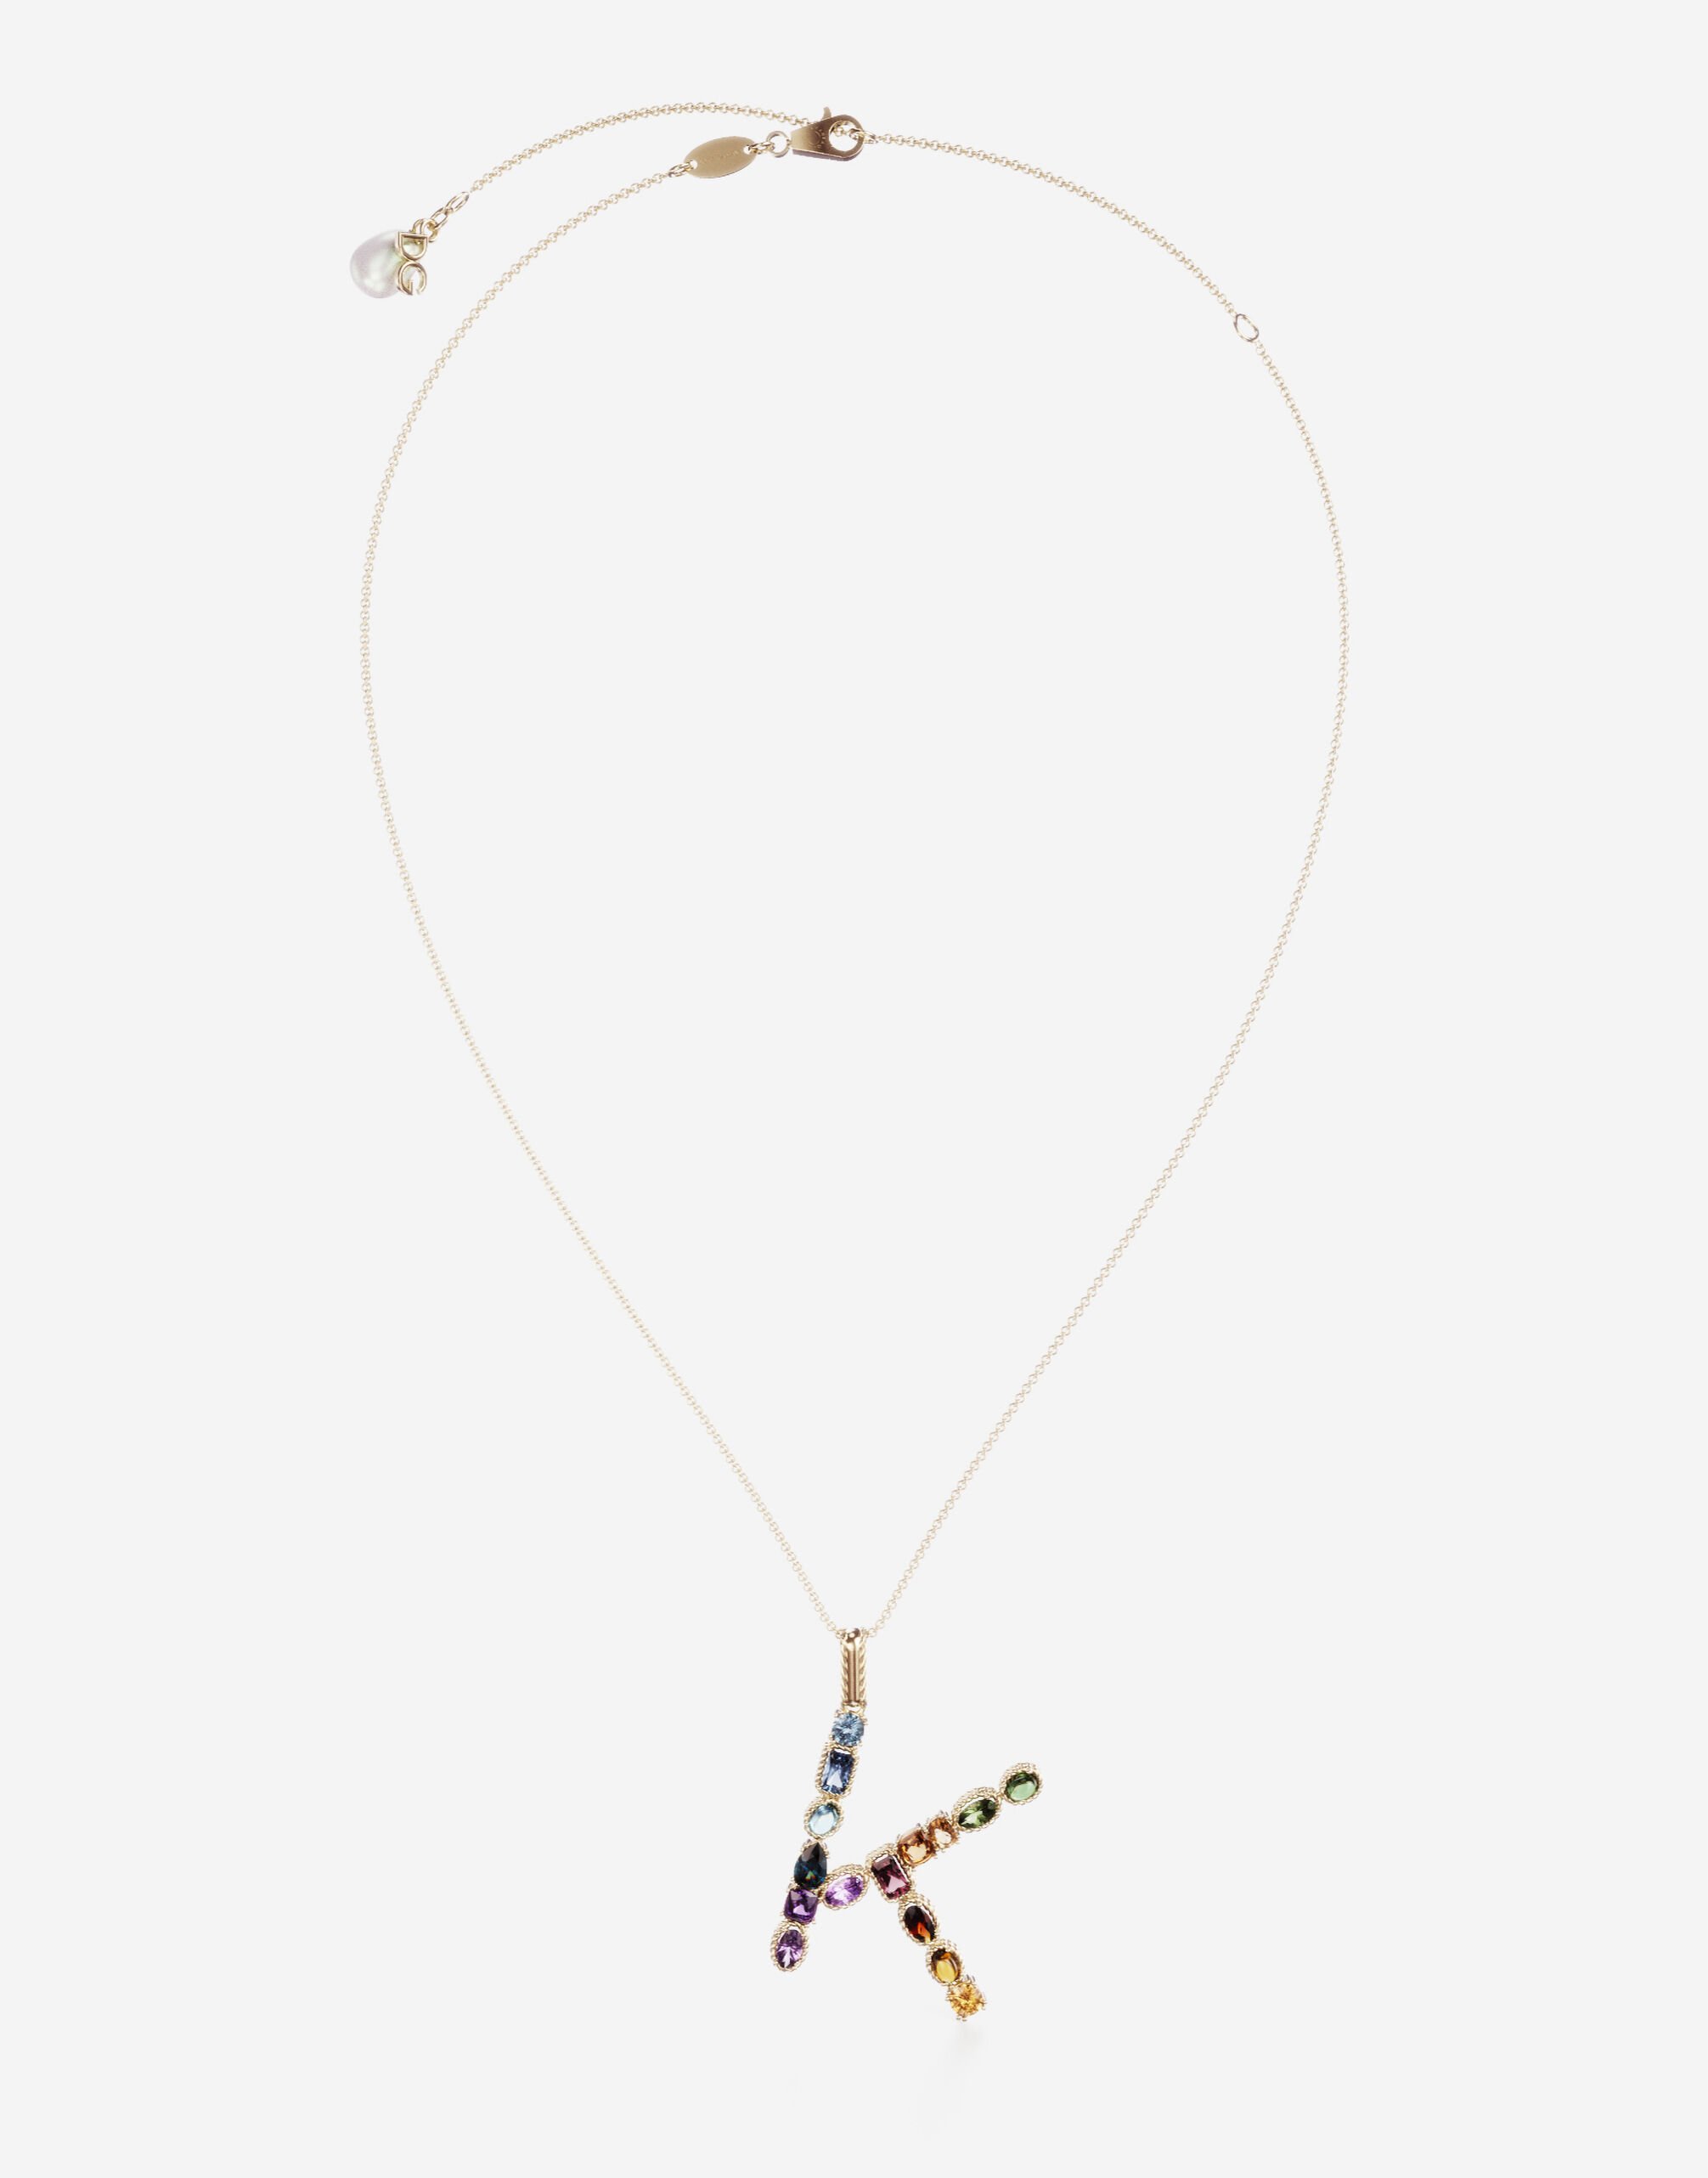 Dolce & Gabbana Anhänger Rainbow mit mehrfarbigen edelsteinen GOLD WAMR2GWMIXA